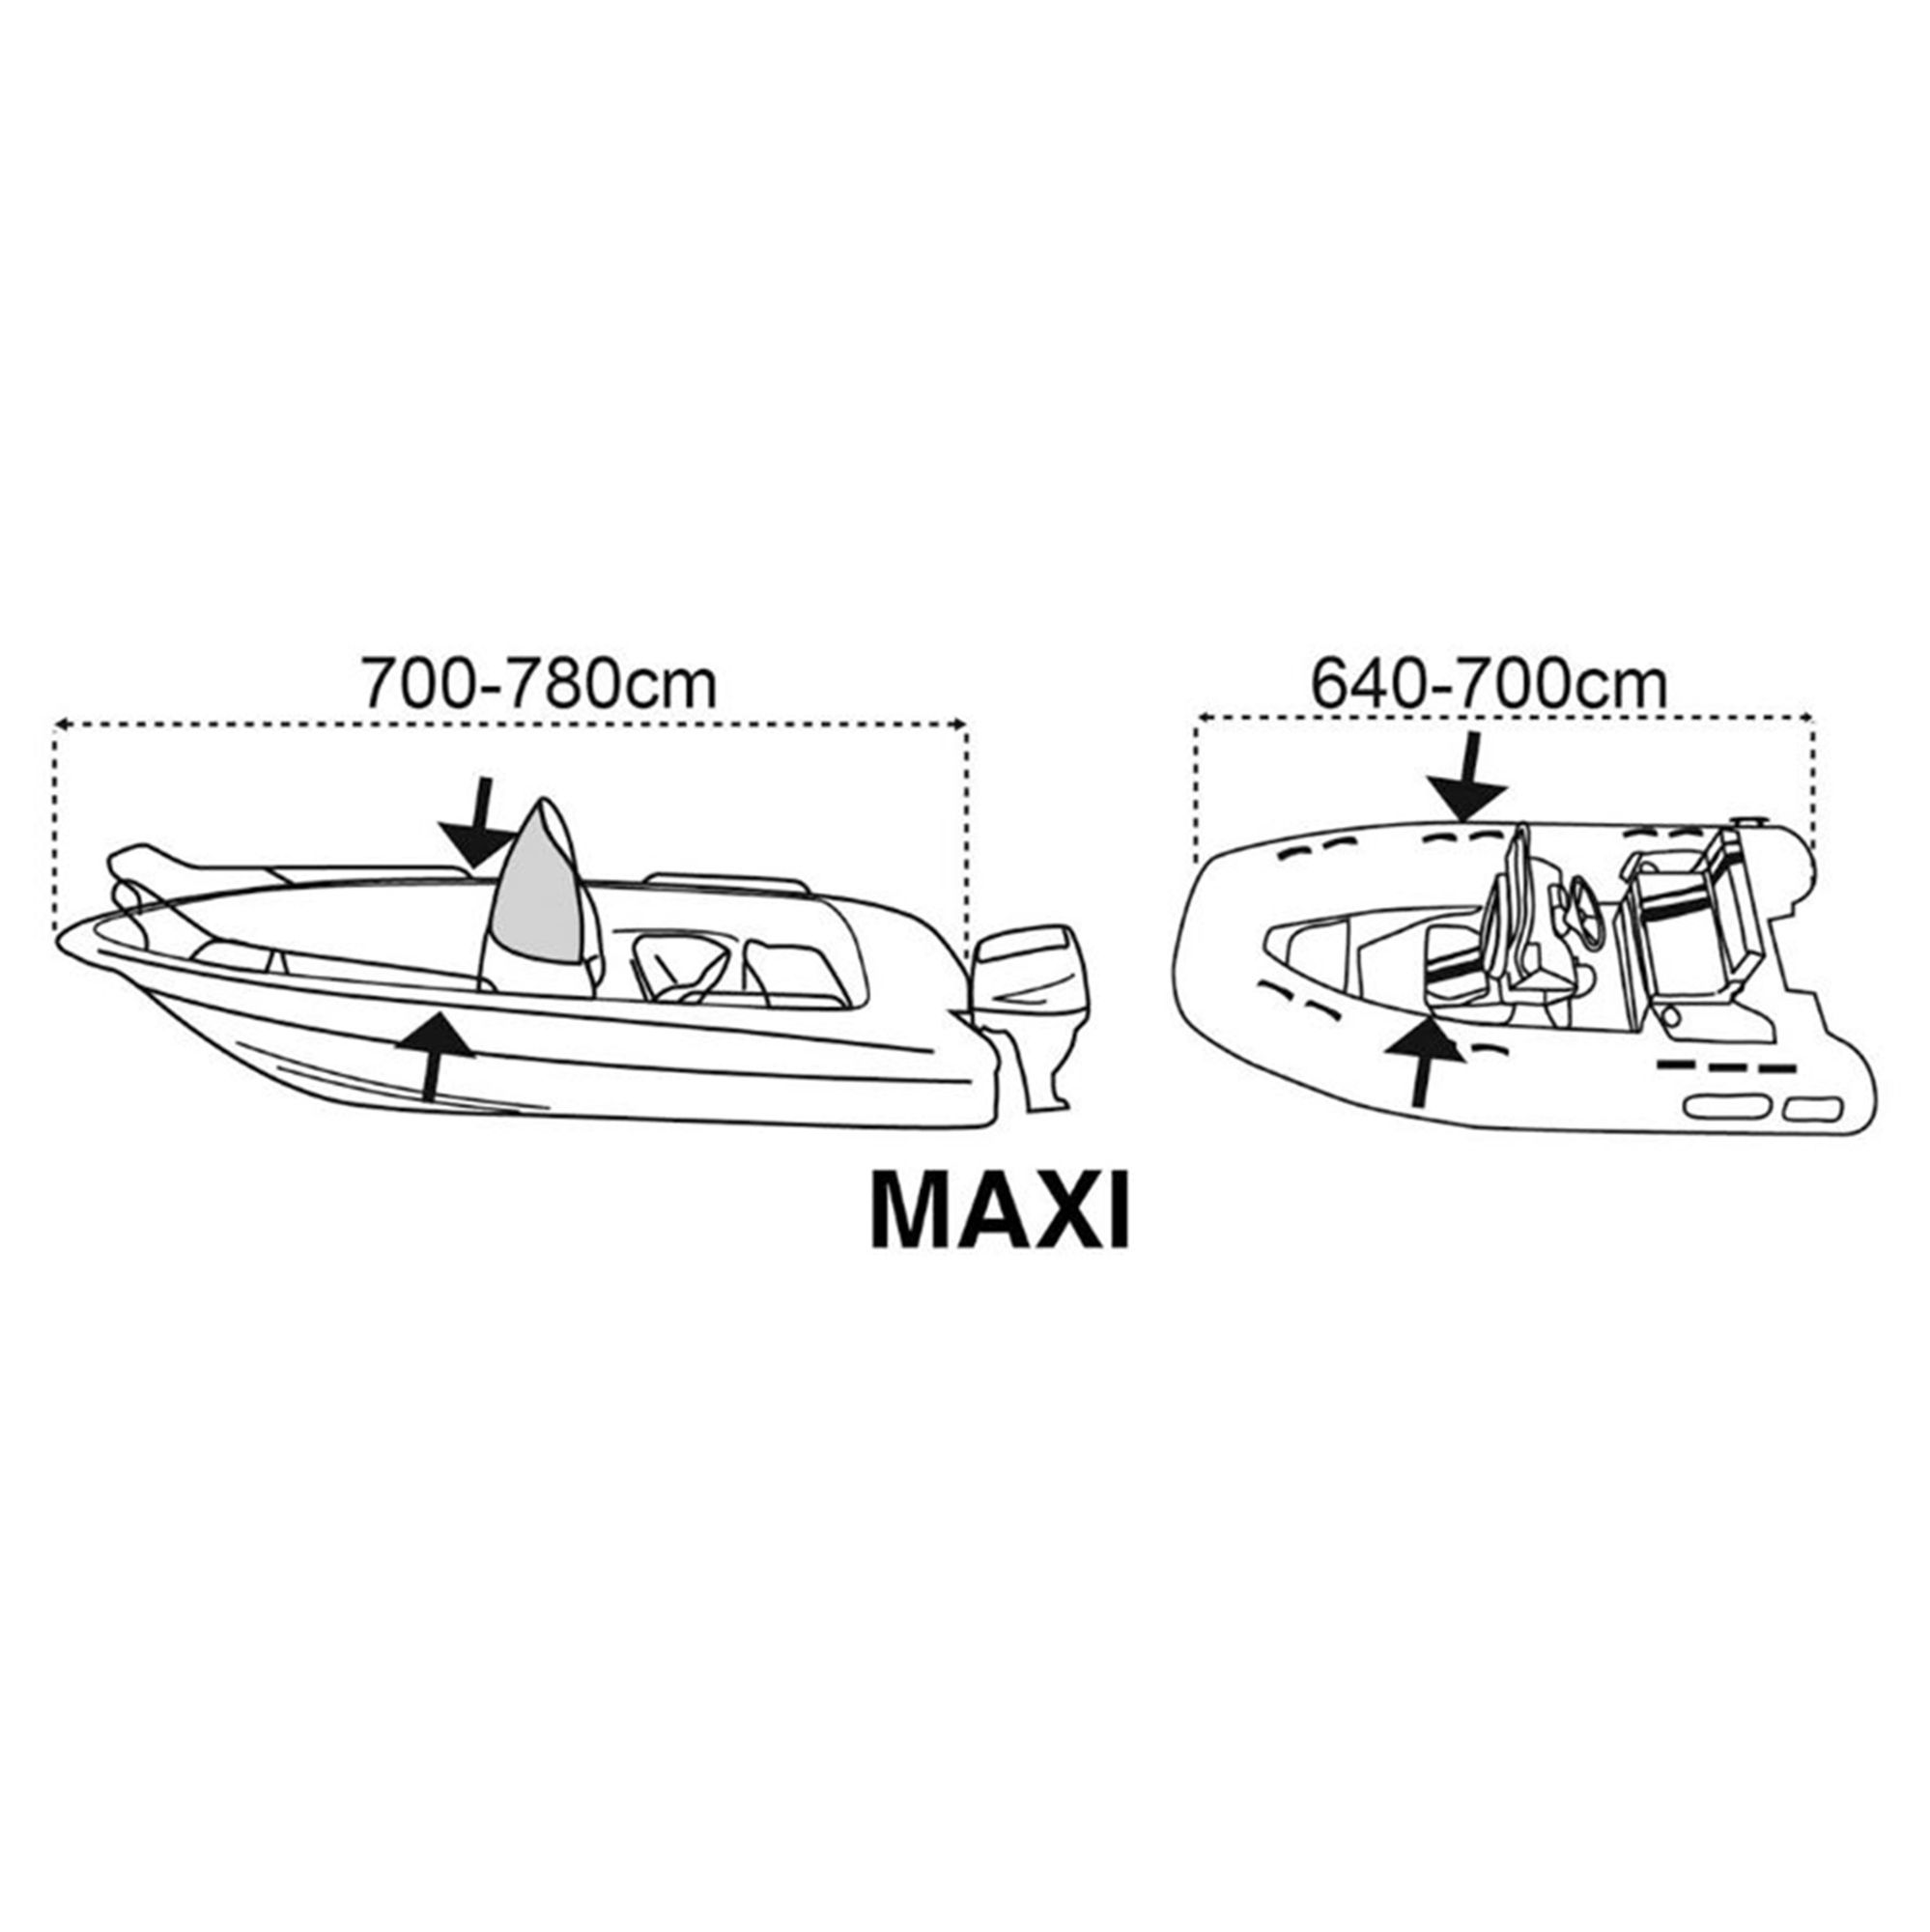 Persenning Maxi 700-780cm